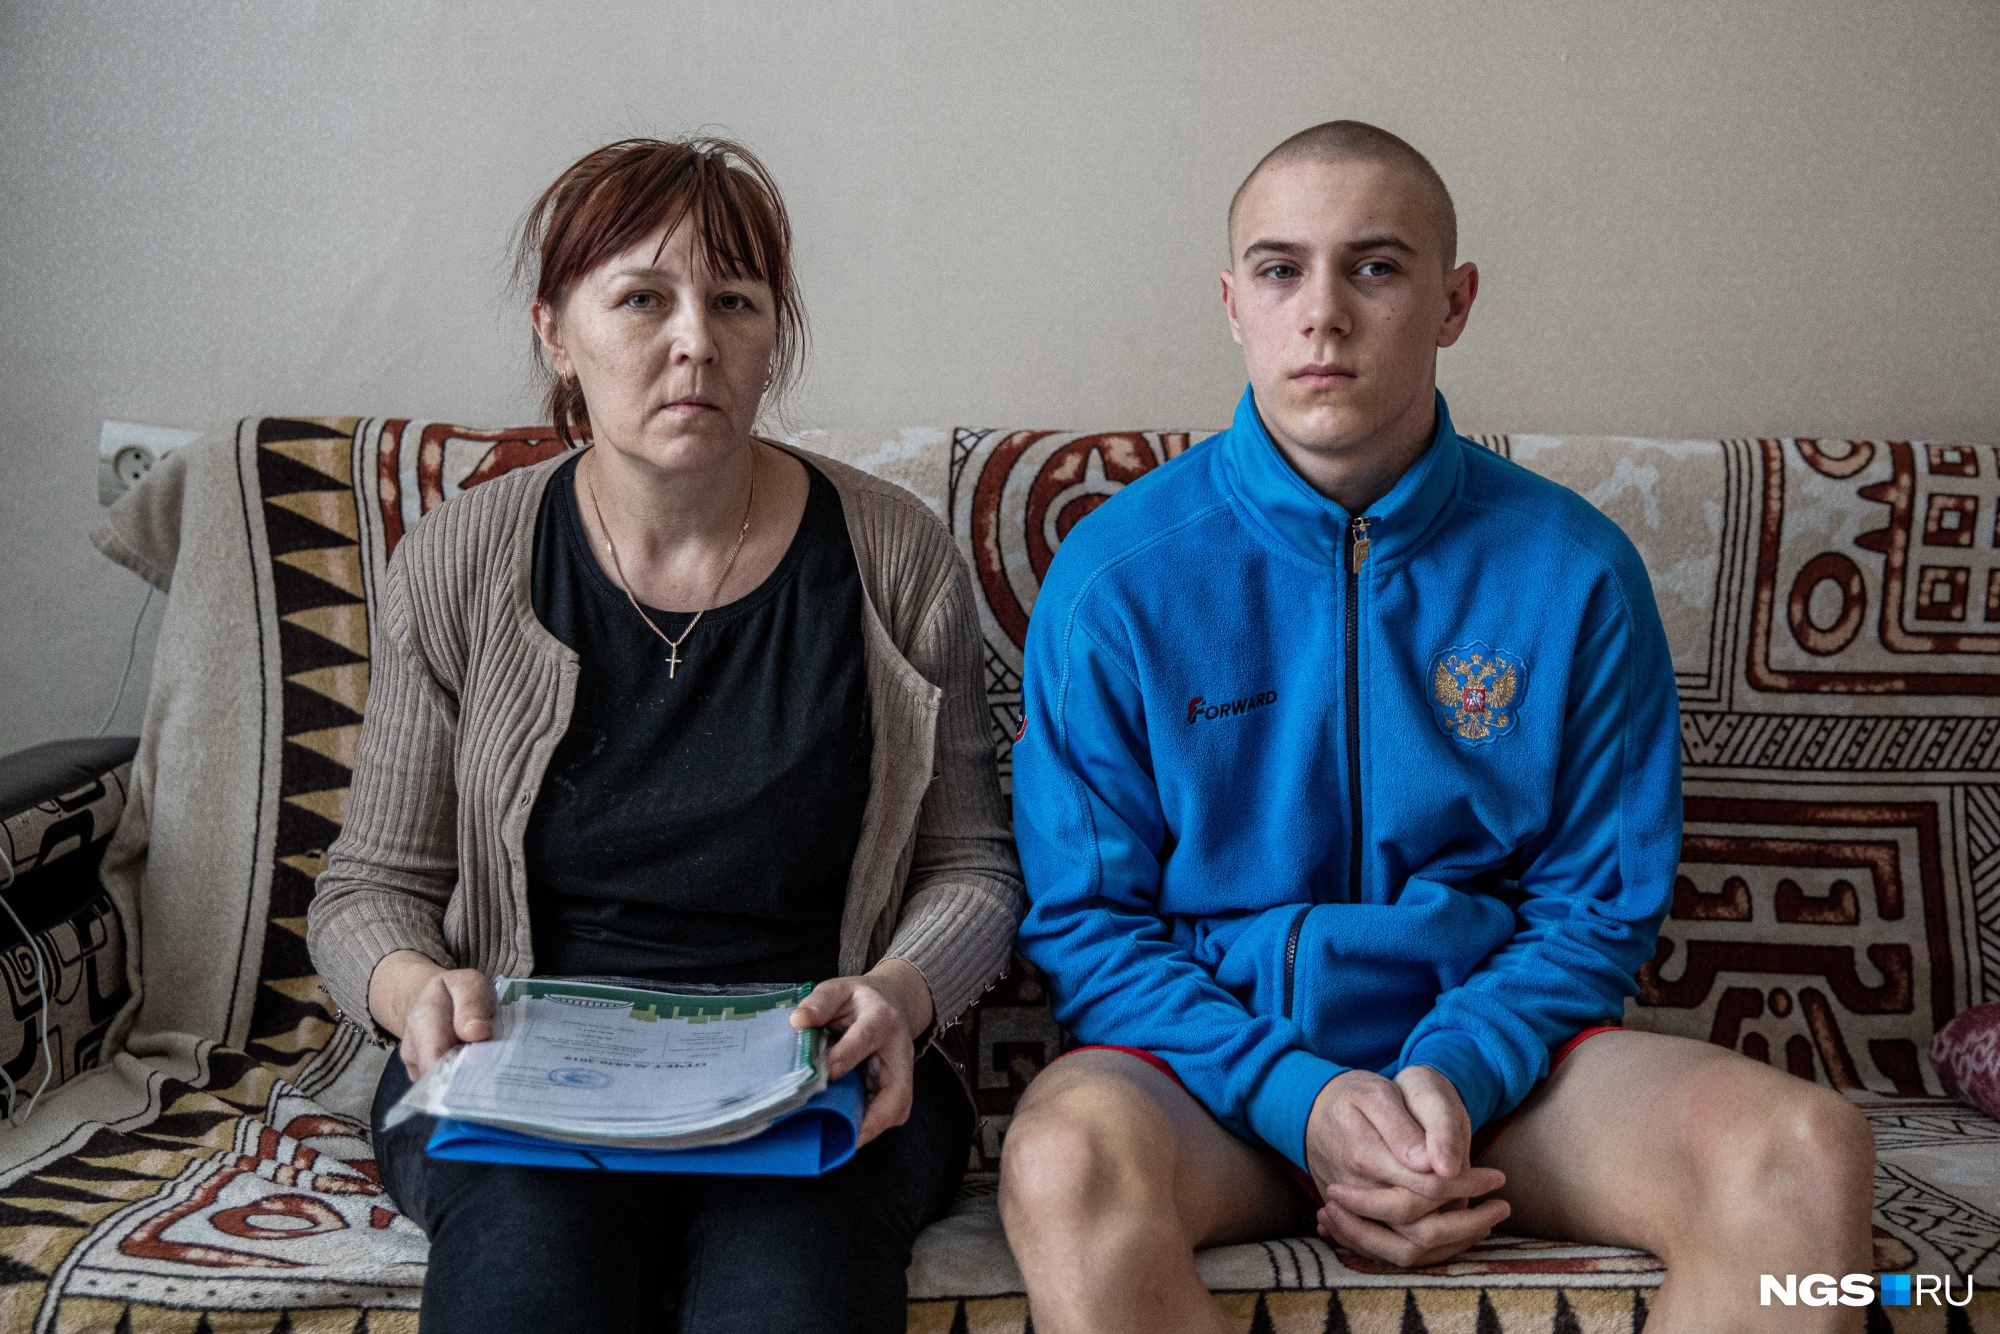 Мать-одиночка из Новосибирска потеряла работу. Приставы выставили ее единственное жилье на торги